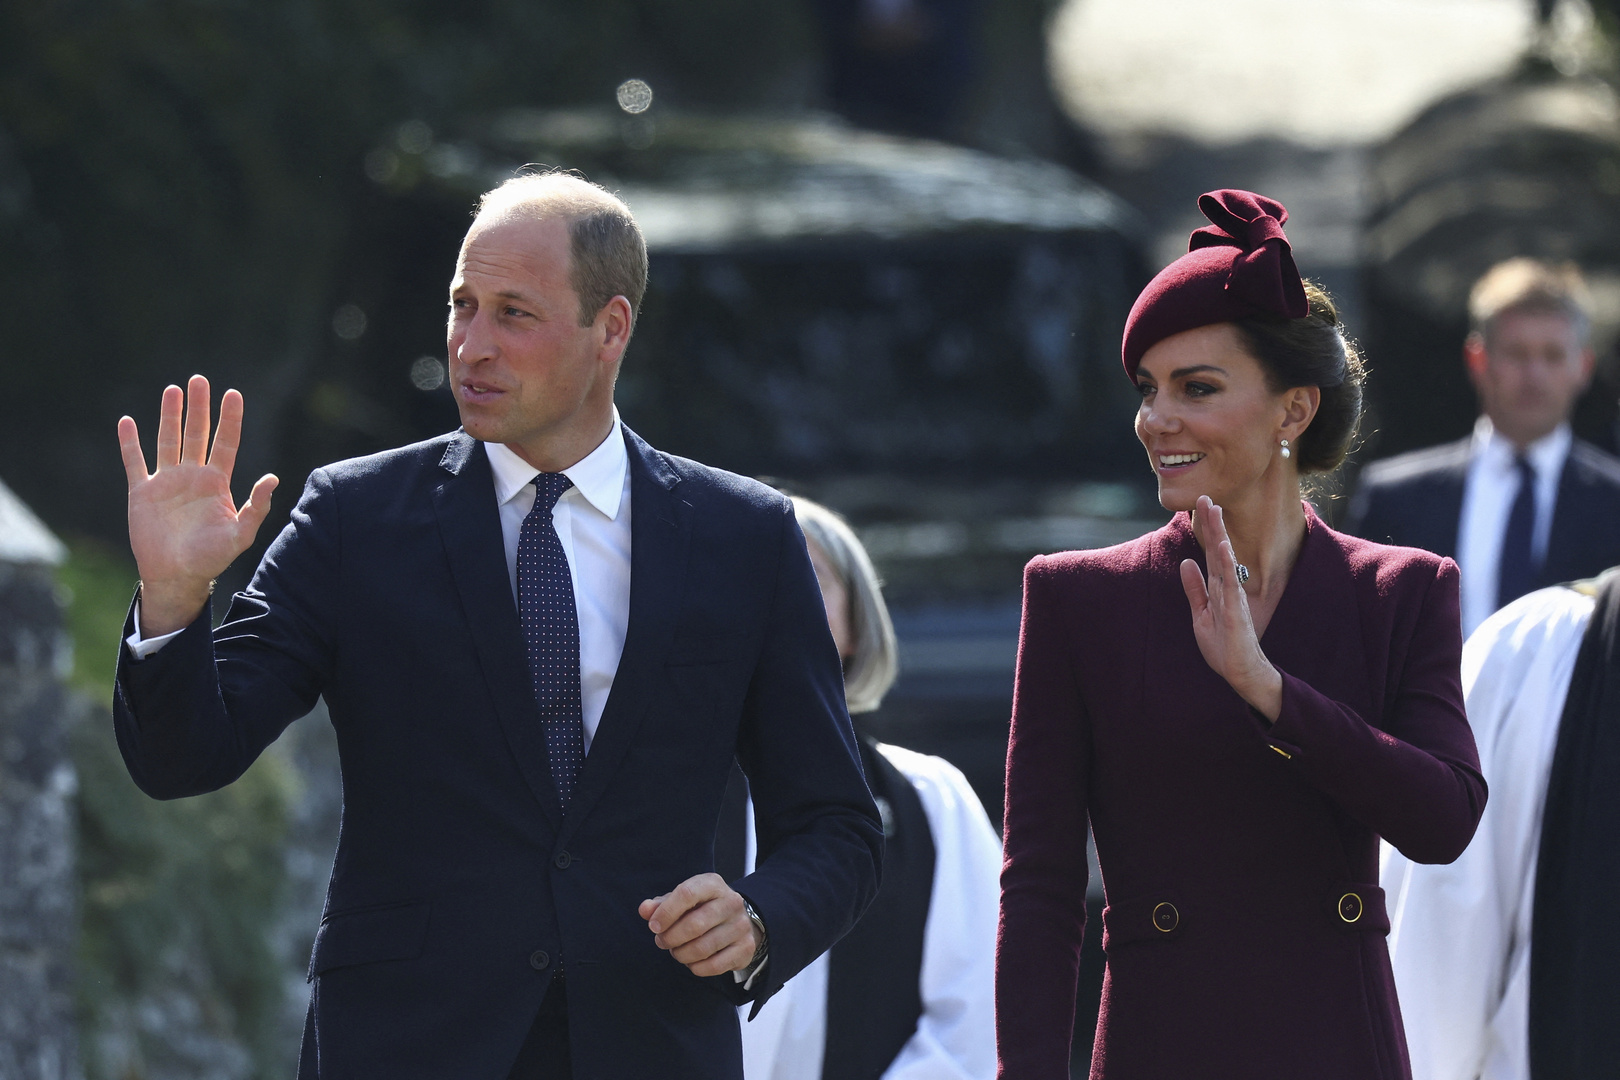 Принц Уильям посетил церемонию прощания с родственником без Кейт Миддлтон